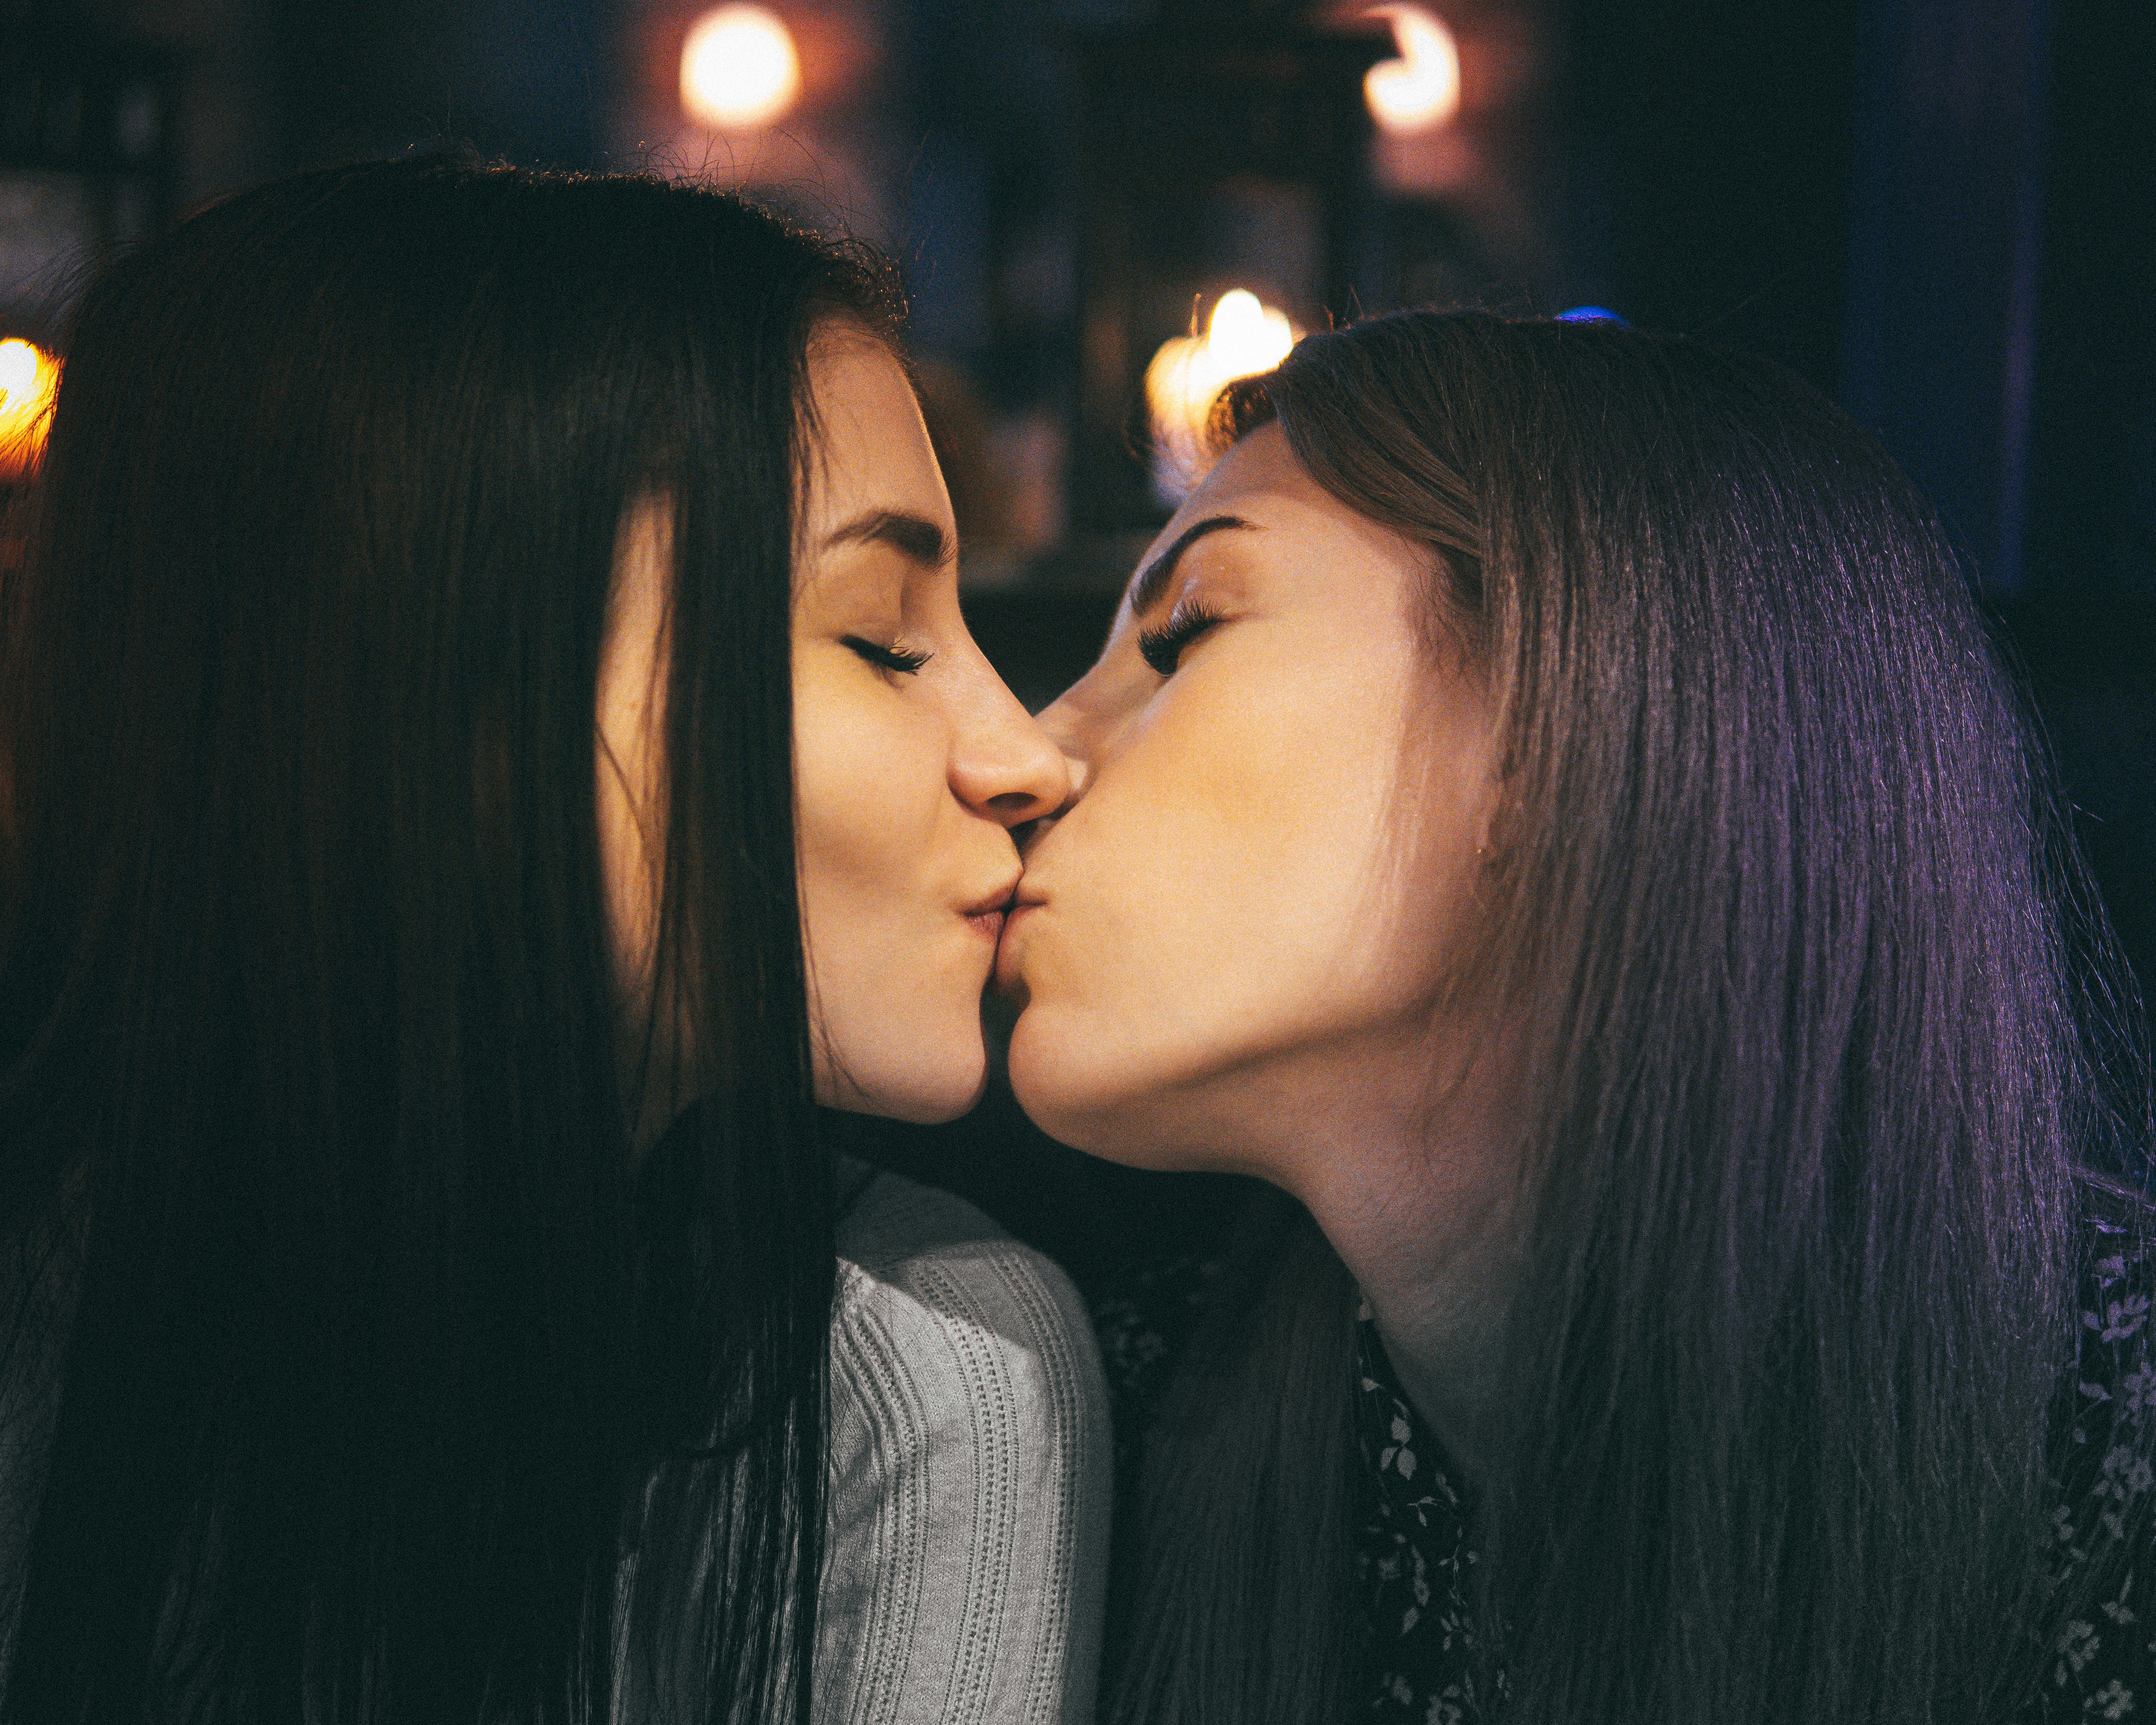 Doing lesbian. Поцелуй девушек. Поцелуй двух девушек. Красивый лесбийский поцелуй. Девушка целует девушку.